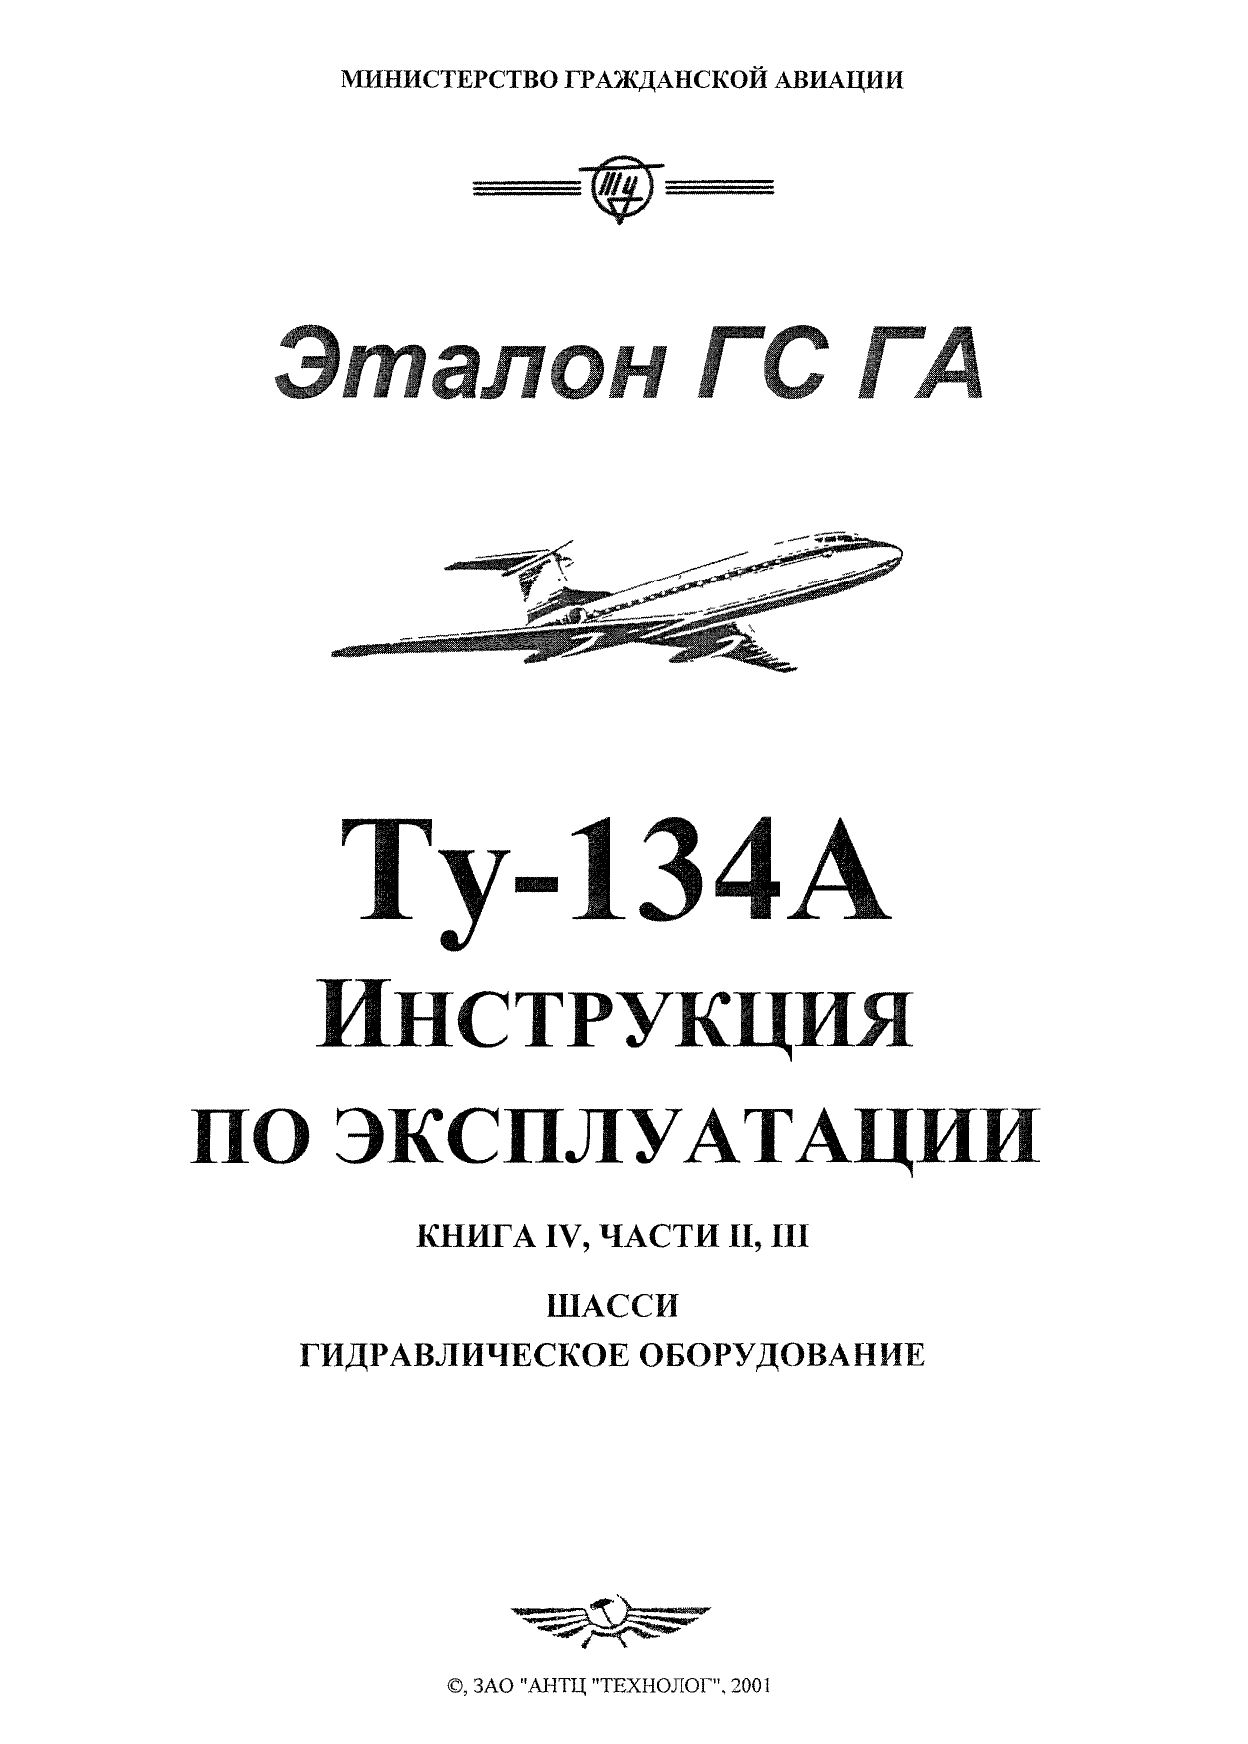 Tu-134_IYE_kn4_ch2,3_001